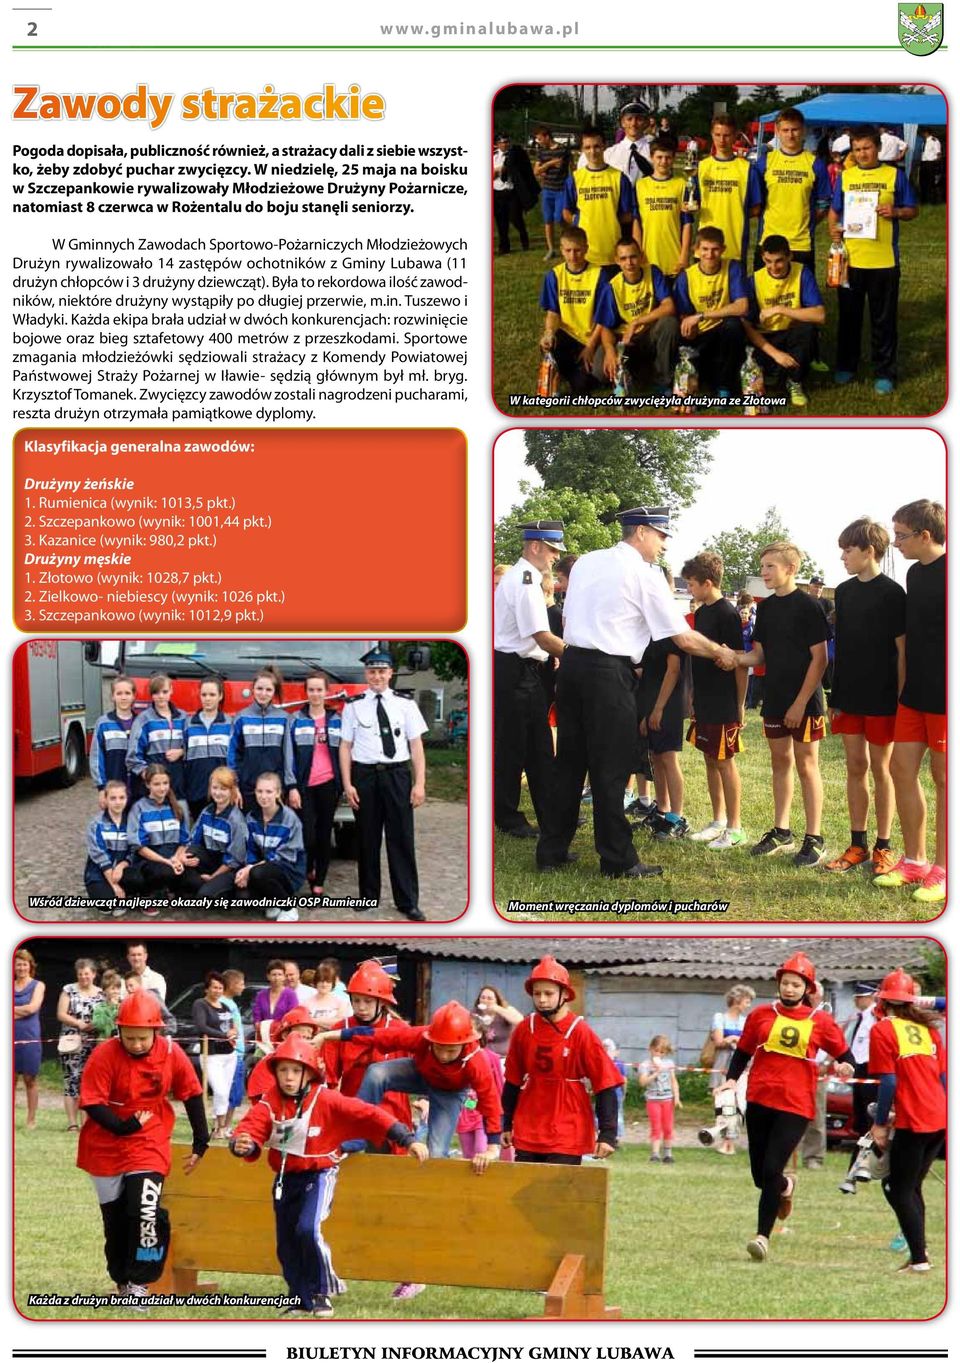 W Gminnych Zawodach Sportowo-Pożarniczych Młodzieżowych Drużyn rywalizowało 14 zastępów ochotników z Gminy Lubawa (11 drużyn chłopców i 3 drużyny dziewcząt).